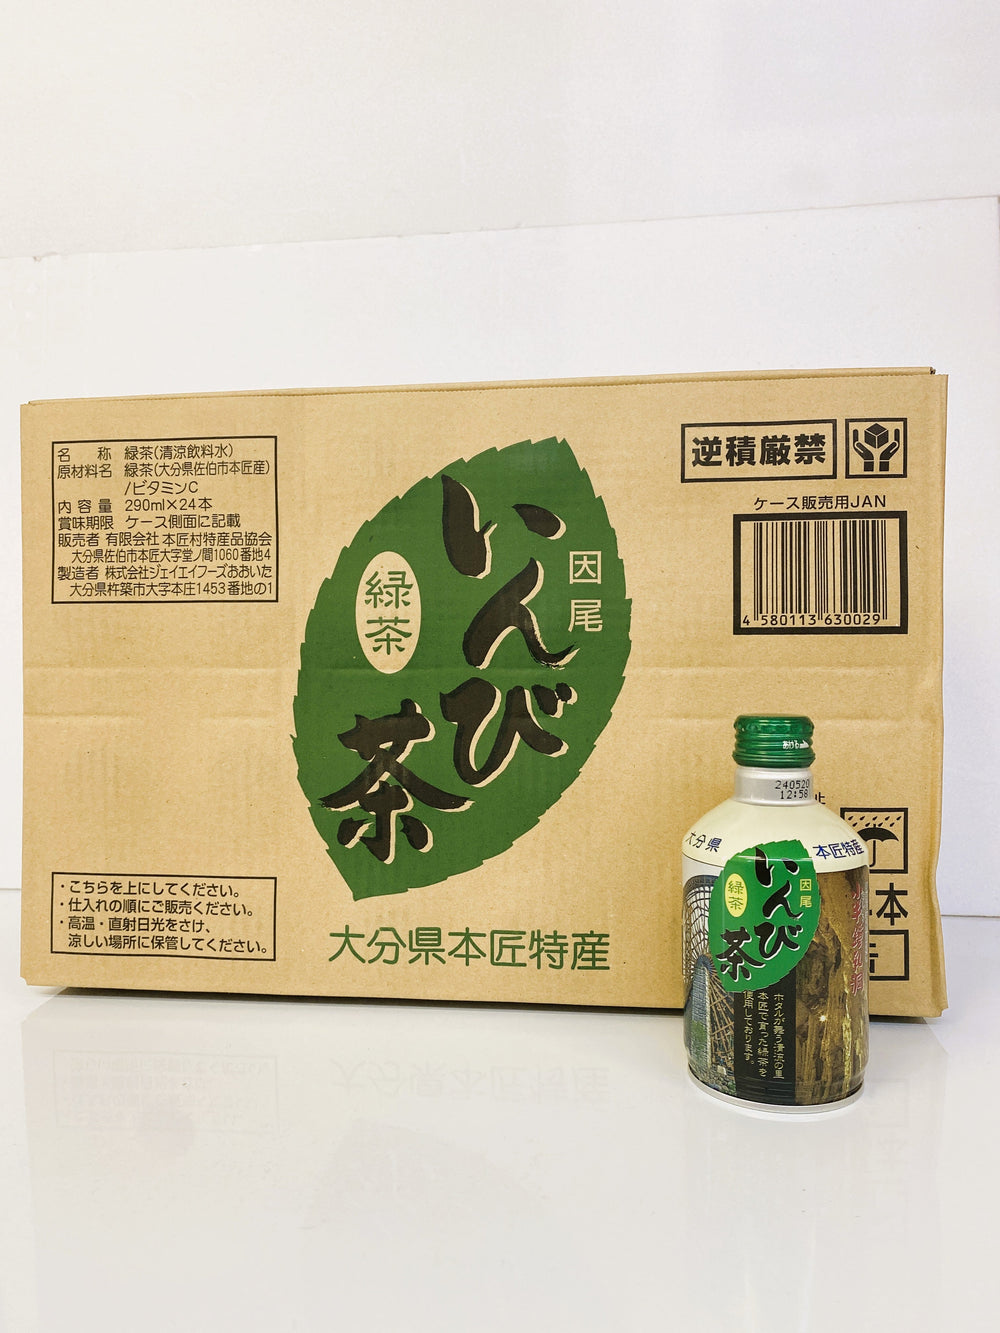 【日本大分縣名産品】 本匠村特產協會 因尾茶 瓶罐 (盒)